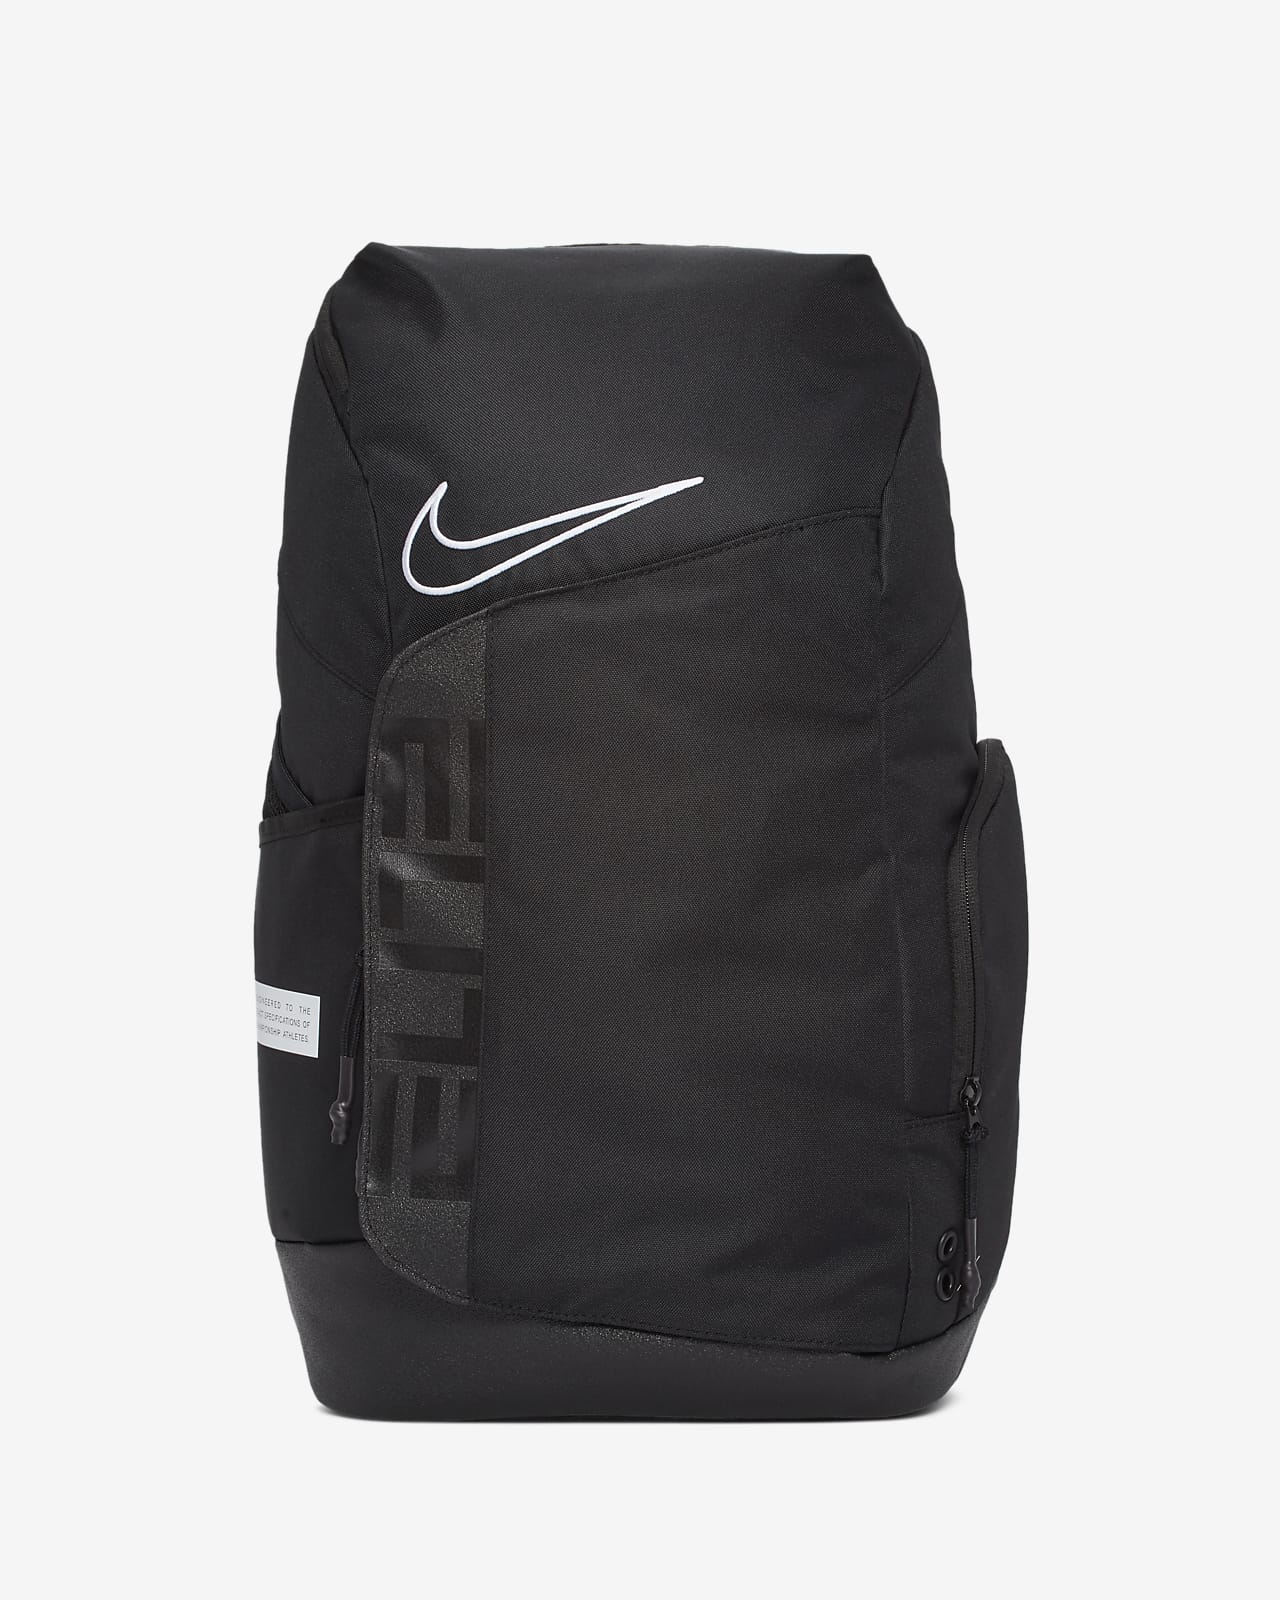 nike basketball bags on sale